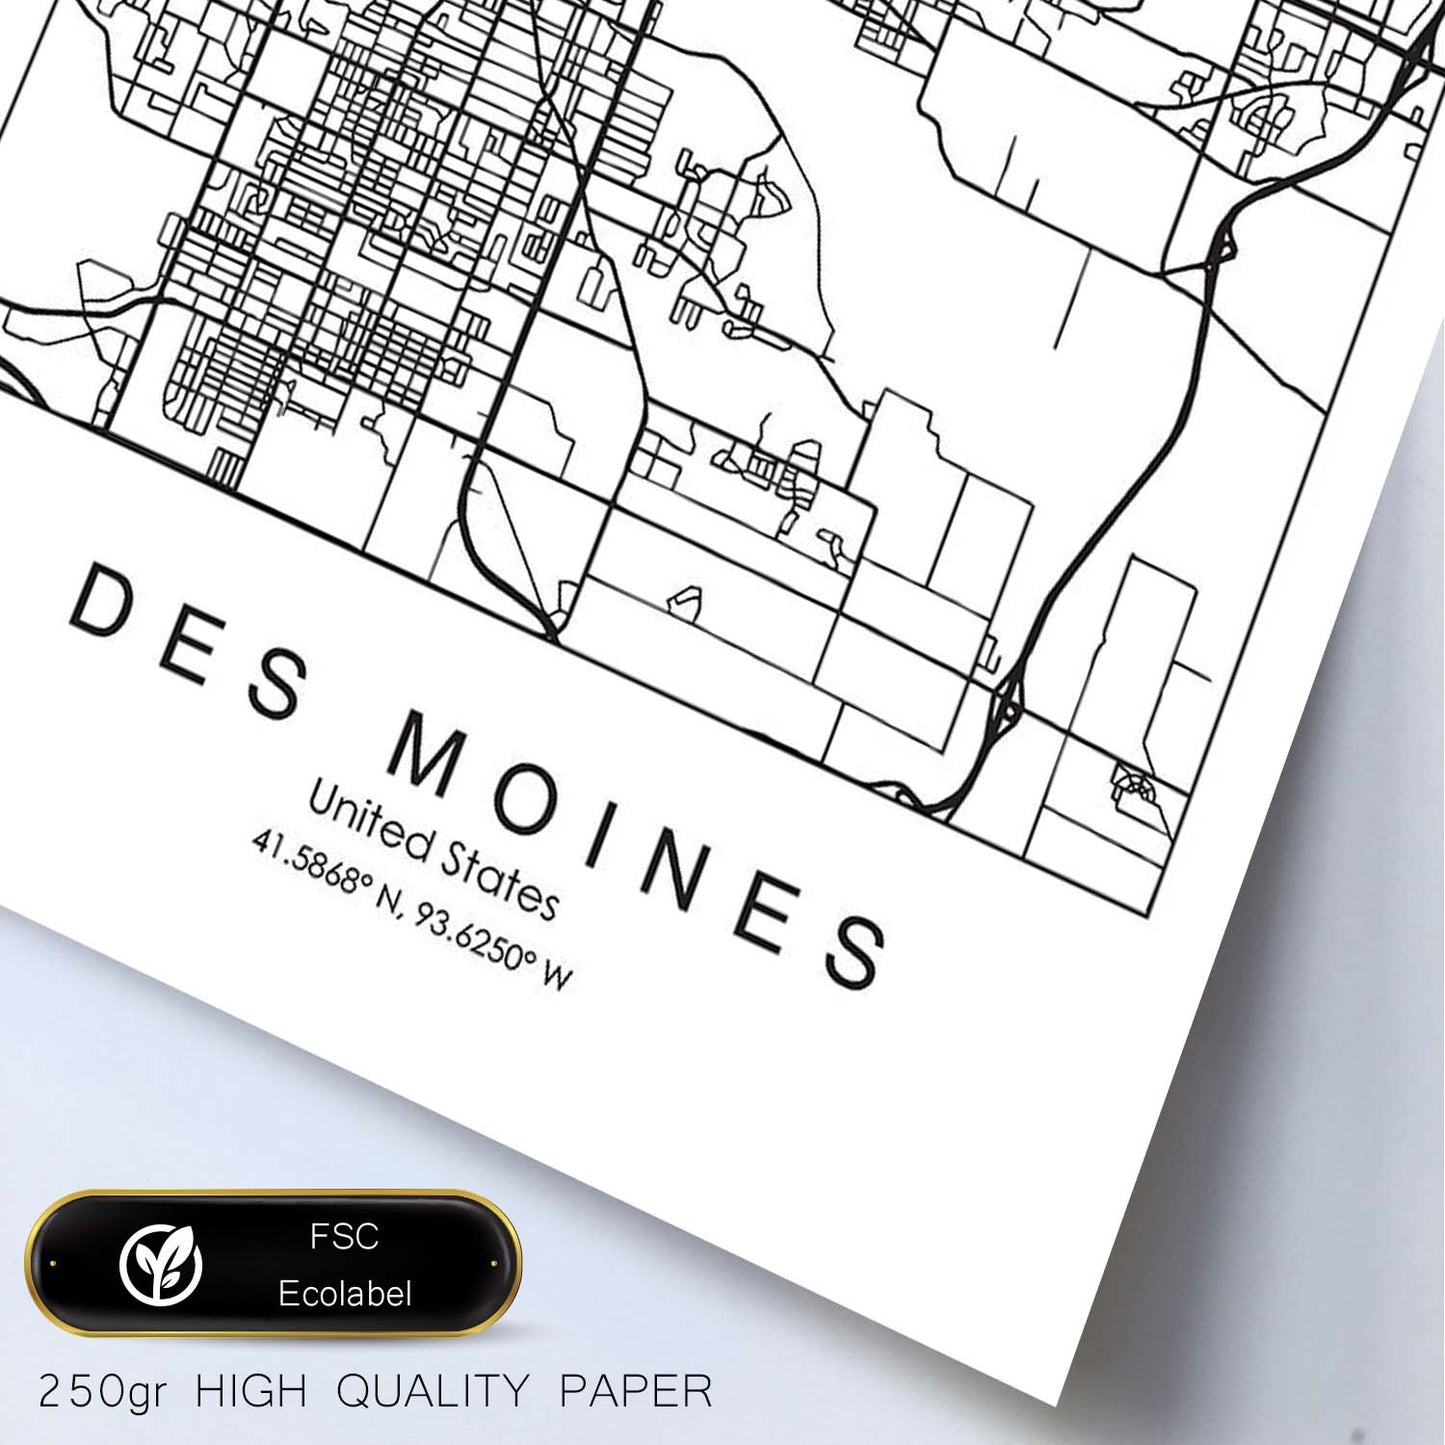 Poster con mapa de Des Moines. Lámina de Estados Unidos, con imágenes de mapas y carreteras-Artwork-Nacnic-Nacnic Estudio SL